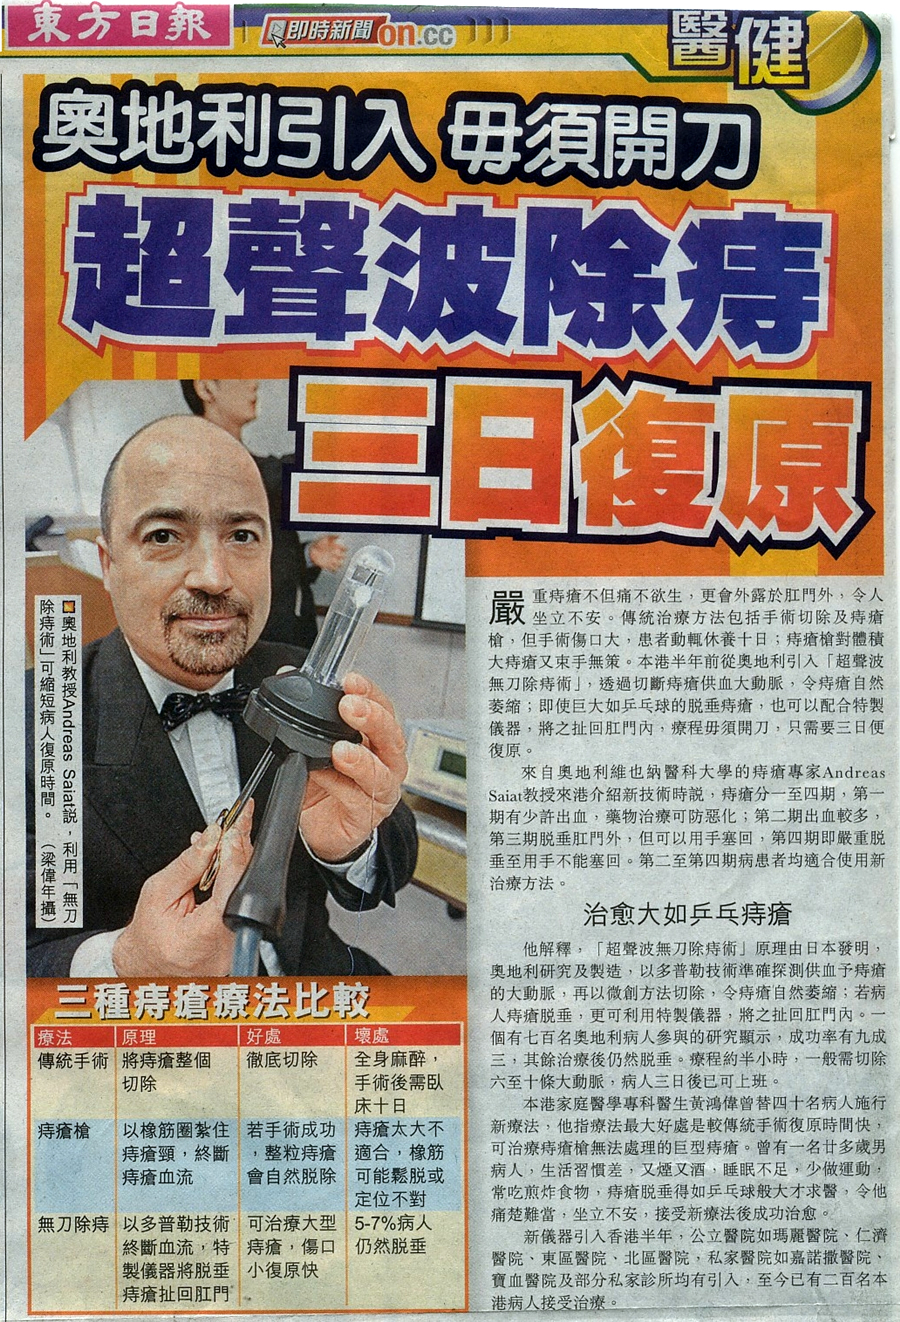 Hong Kong Haemorrhoid Centre newspaper8